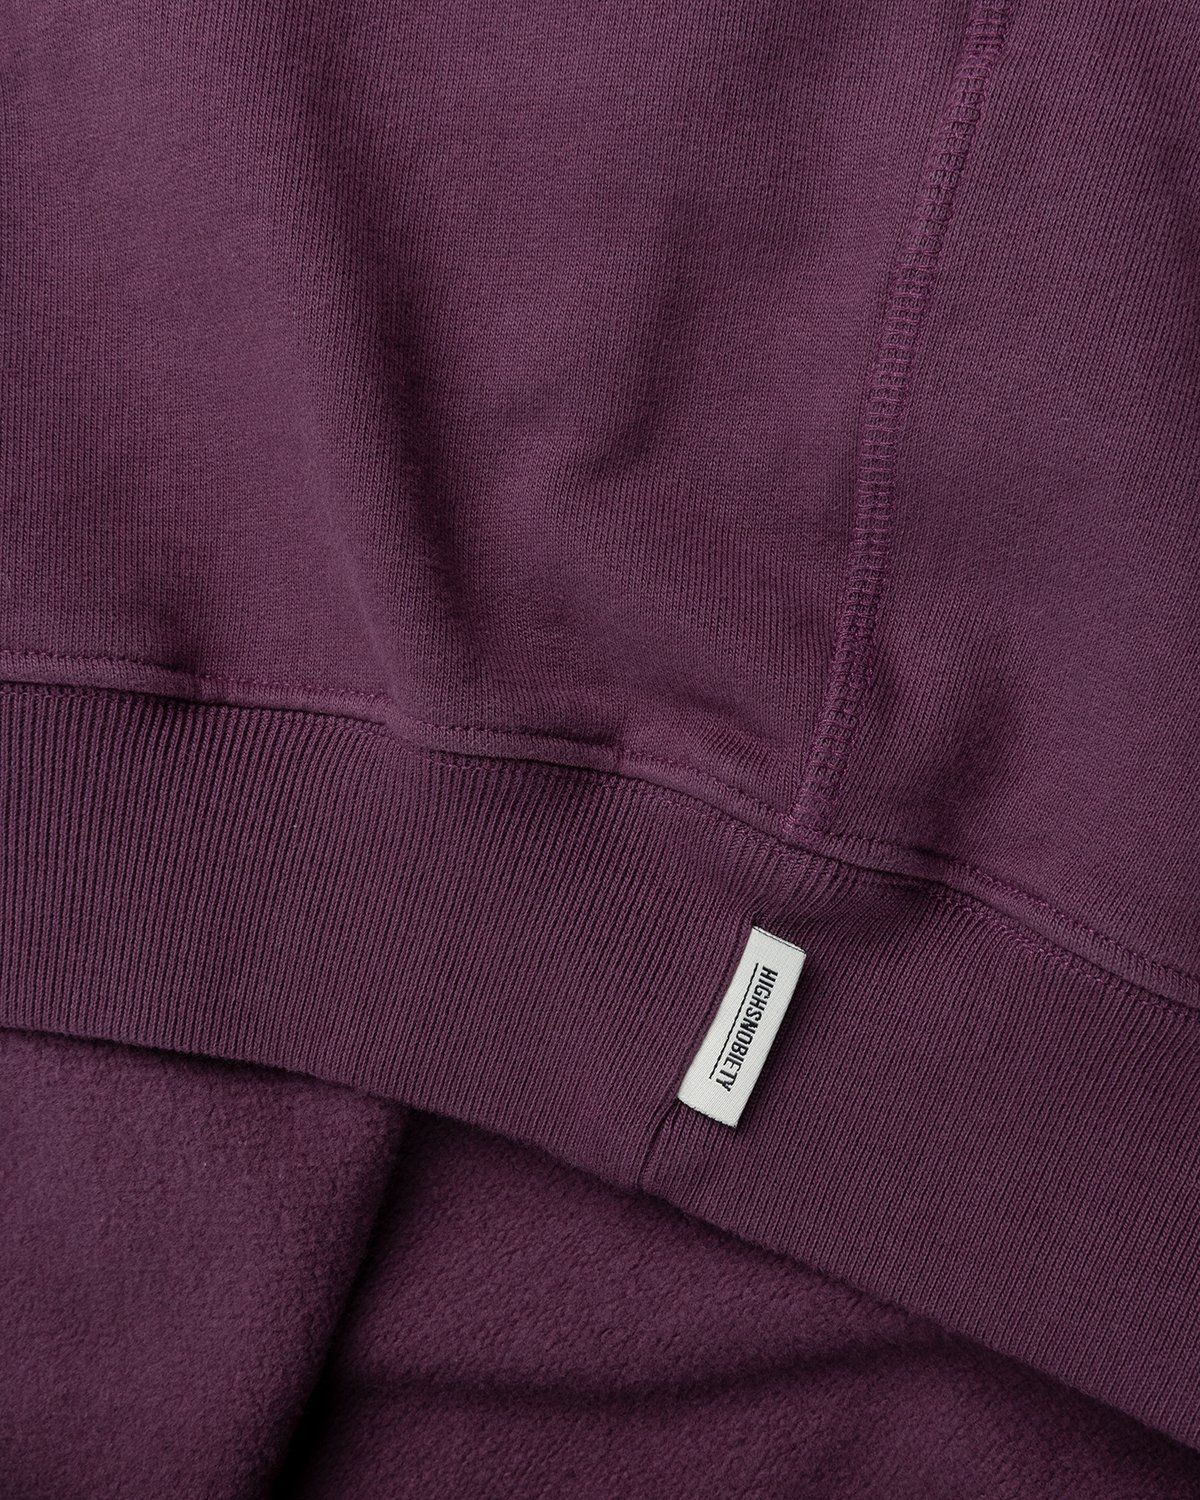 Highsnobiety – Zip Mock Neck Staples Fleece Purple - Zip-Ups - Purple - Image 4